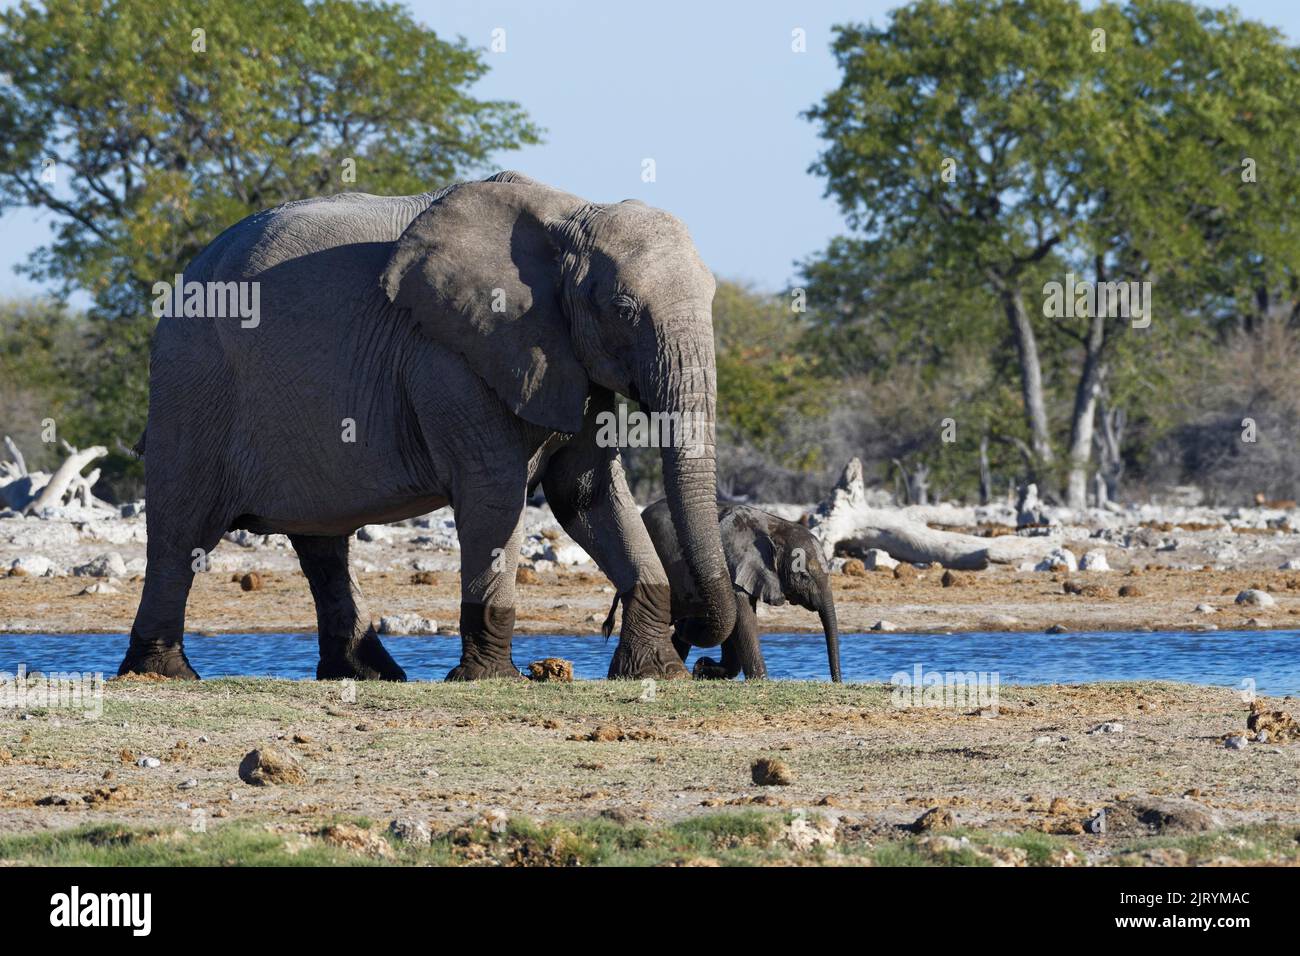 Éléphants de brousse africains (Loxodonta africana), mère avec bébé éléphant marchant le long du trou d'eau, Parc national d'Etosha, Namibie, Afrique Banque D'Images